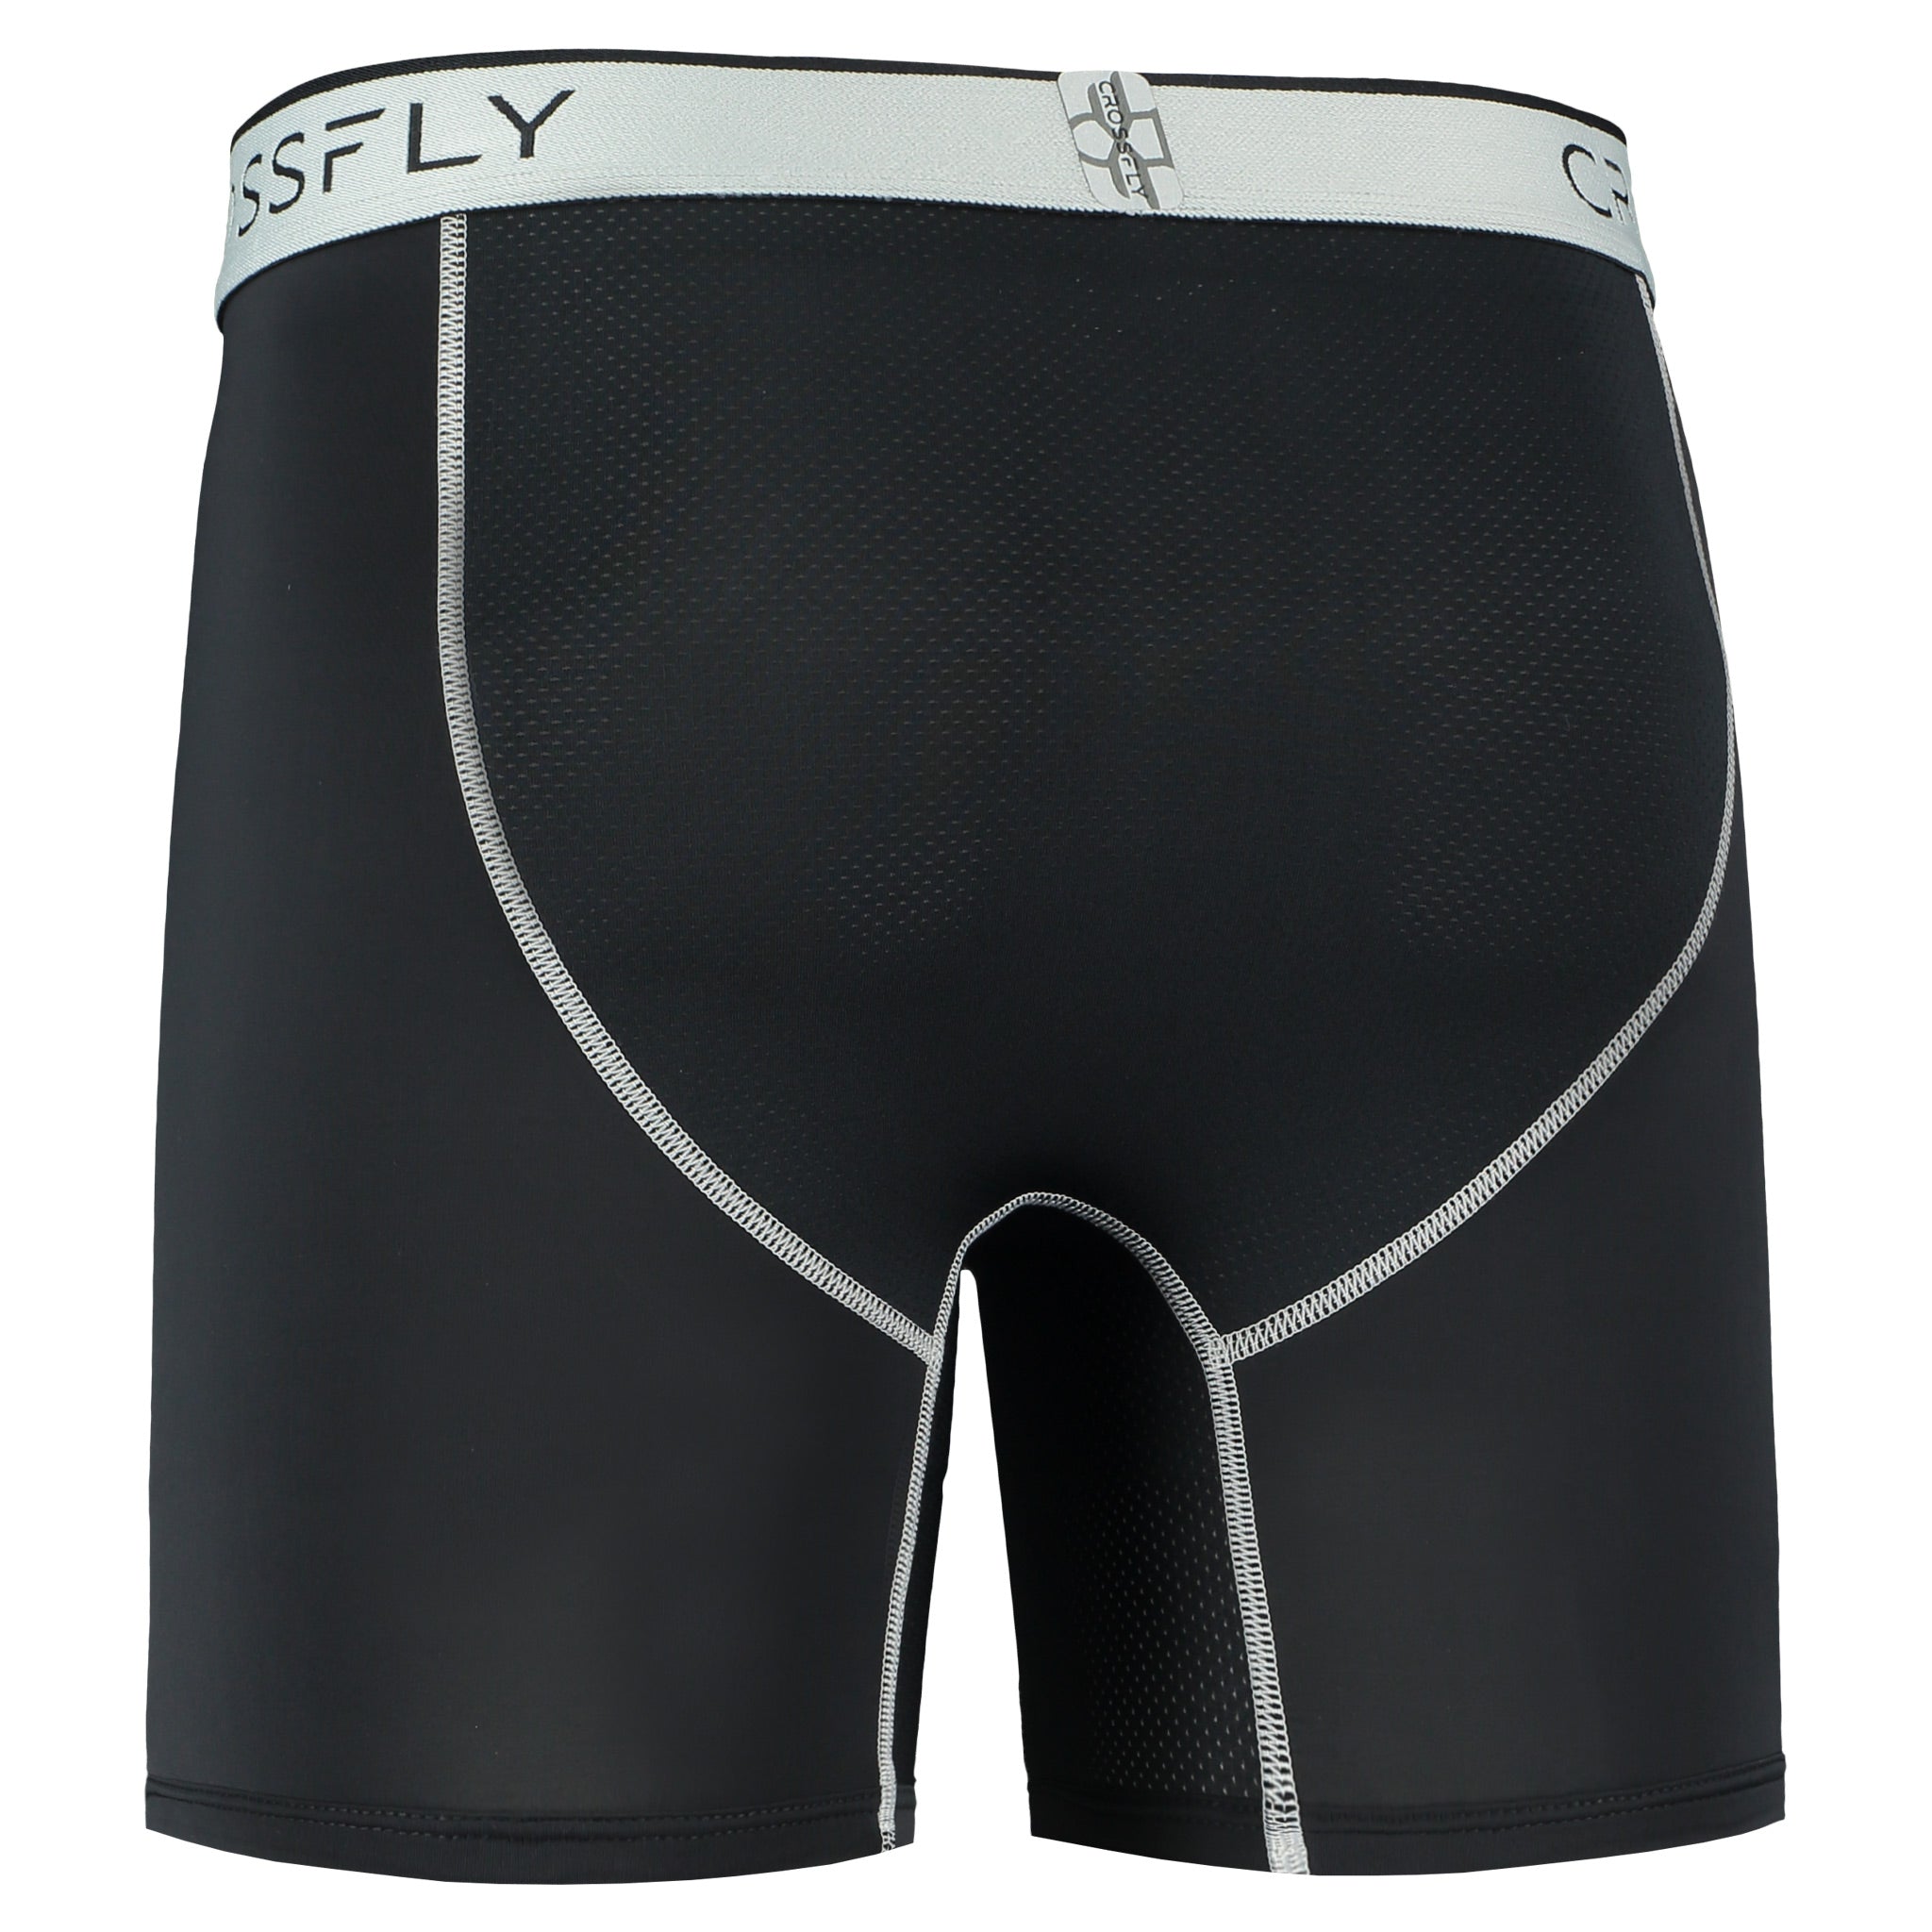 Black Active Mesh Short Trunk Underwear - Made In USA